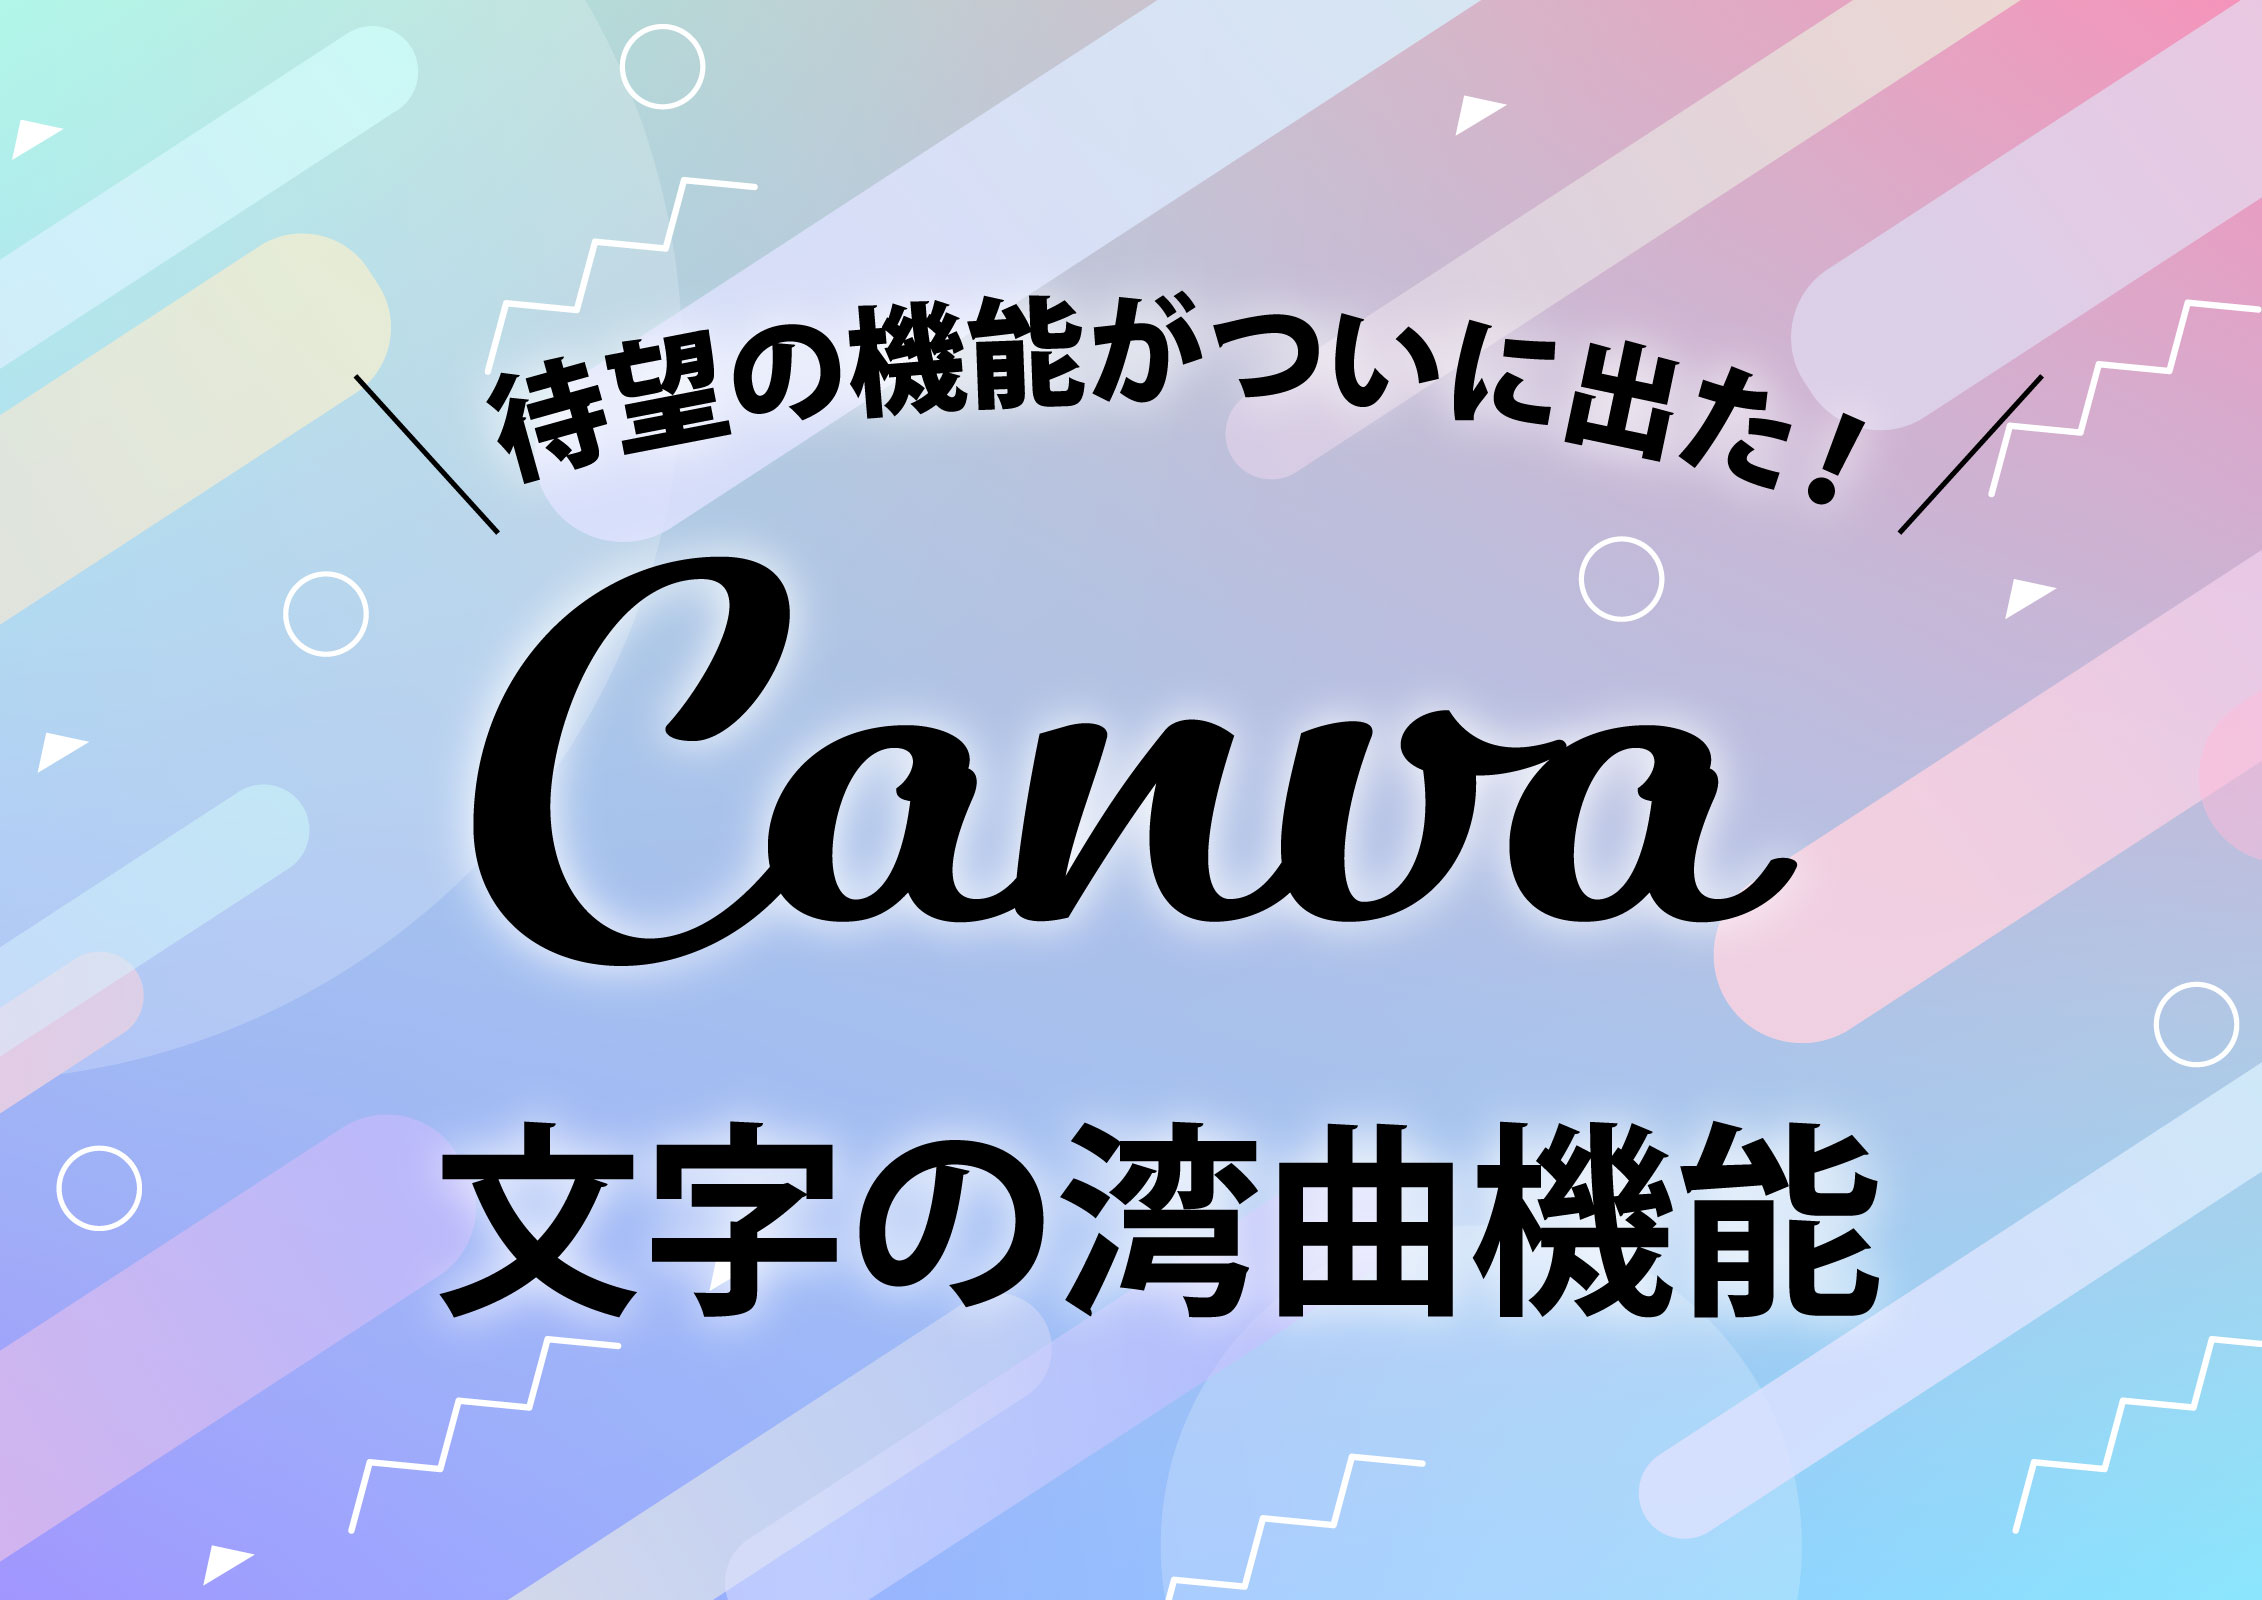 Canvaがテキスト 文字 の変形機能リリース ミライデザイン合同会社